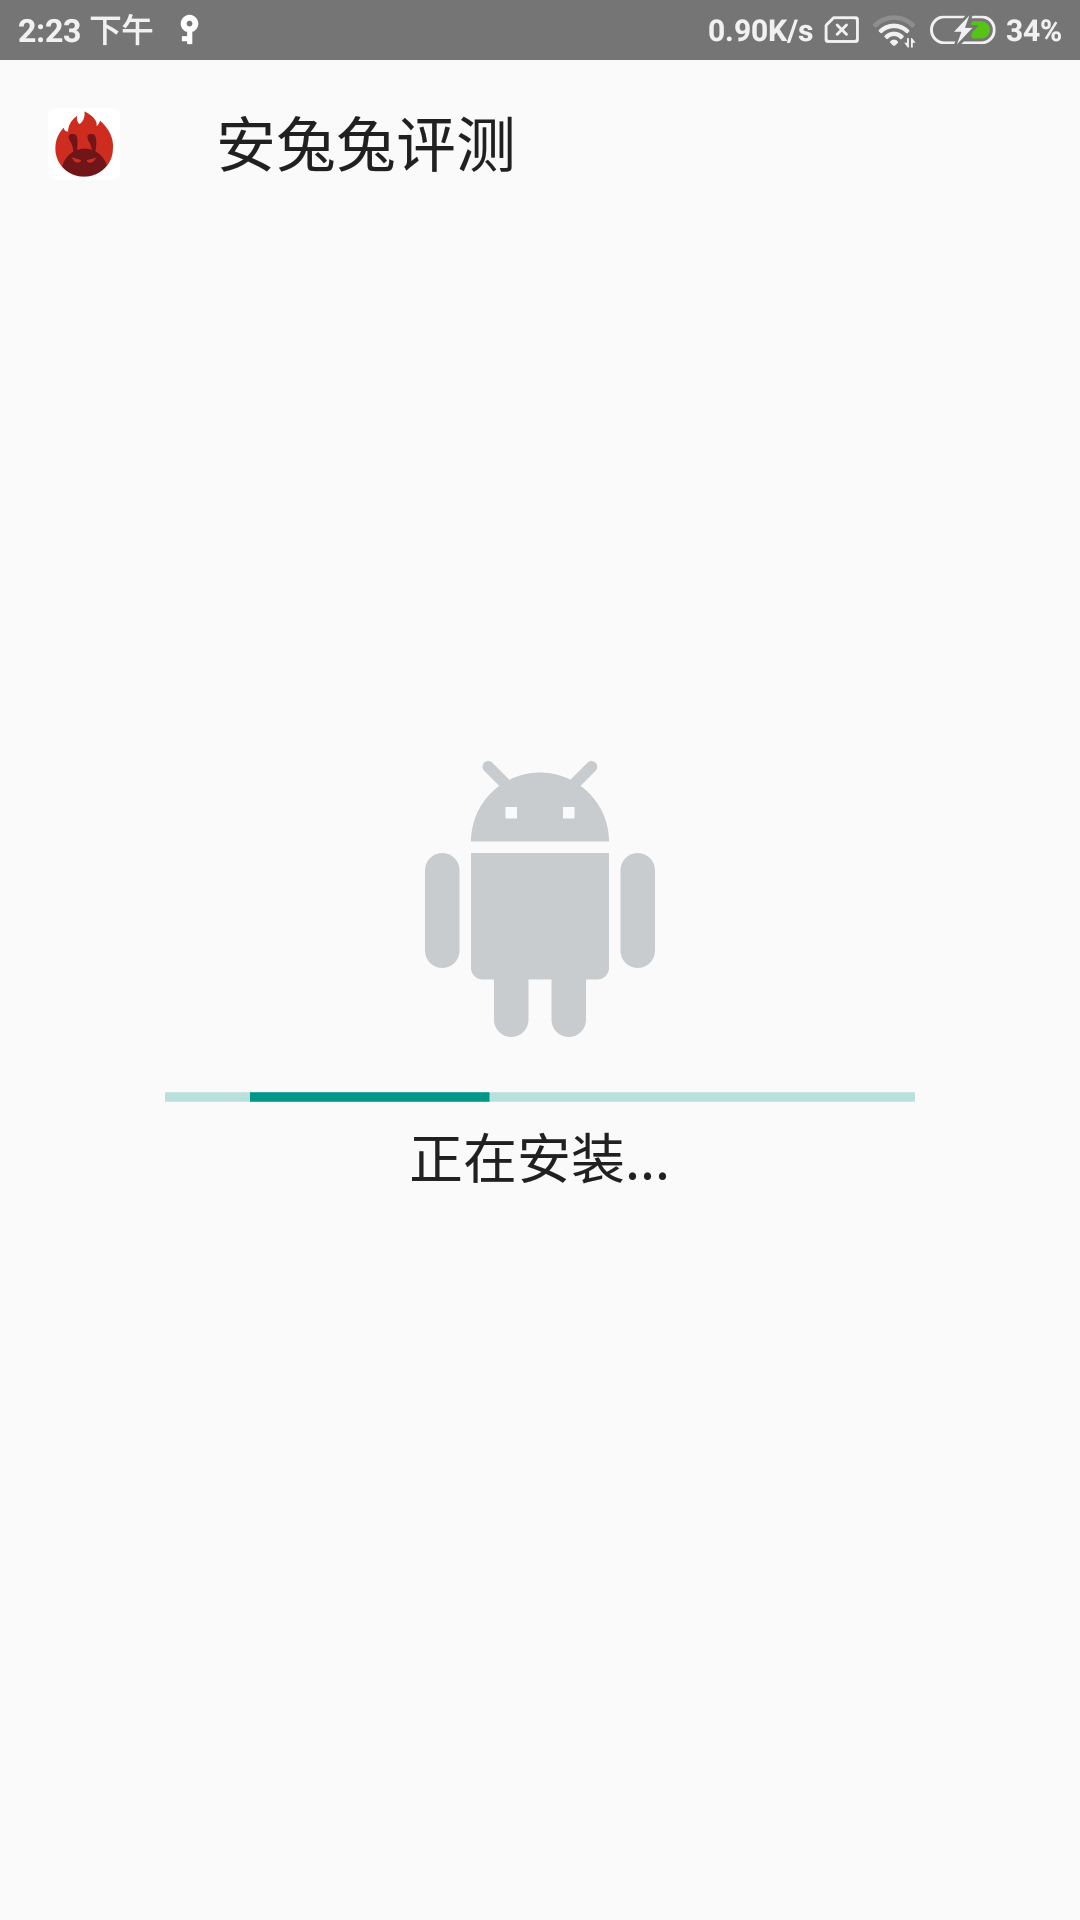 Screenshot_2018-08-30-14-23-06-126_com.google.android.packageinstaller.png